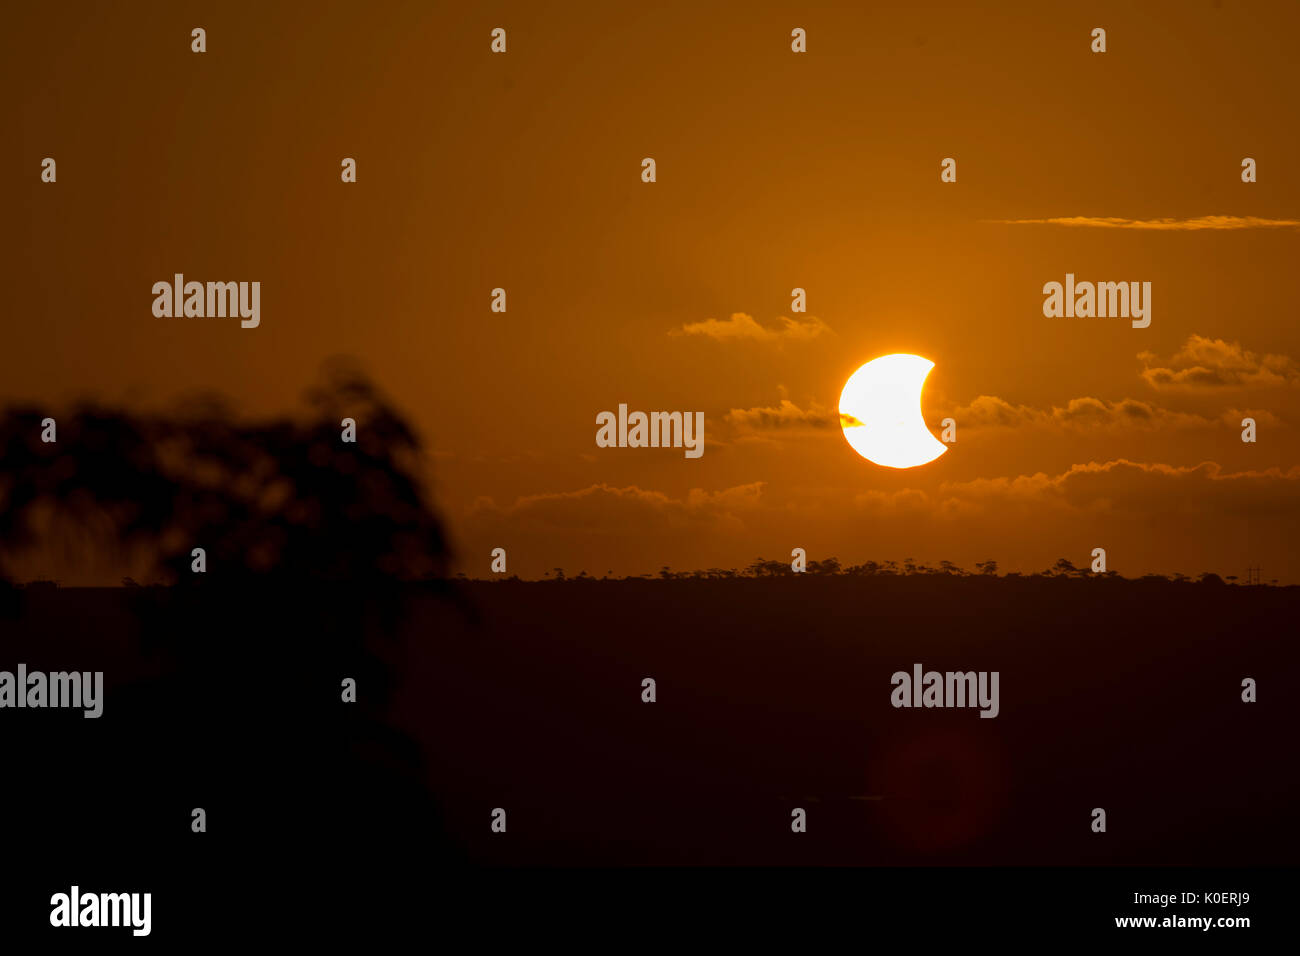 Eclipse solaire au Santa Terezinha vue dans la ville de Porto Seguro dans l'Alagoas au Brésil, ce lundi, 21. Brésil : Crédit Photo Presse/Alamy Live News Banque D'Images